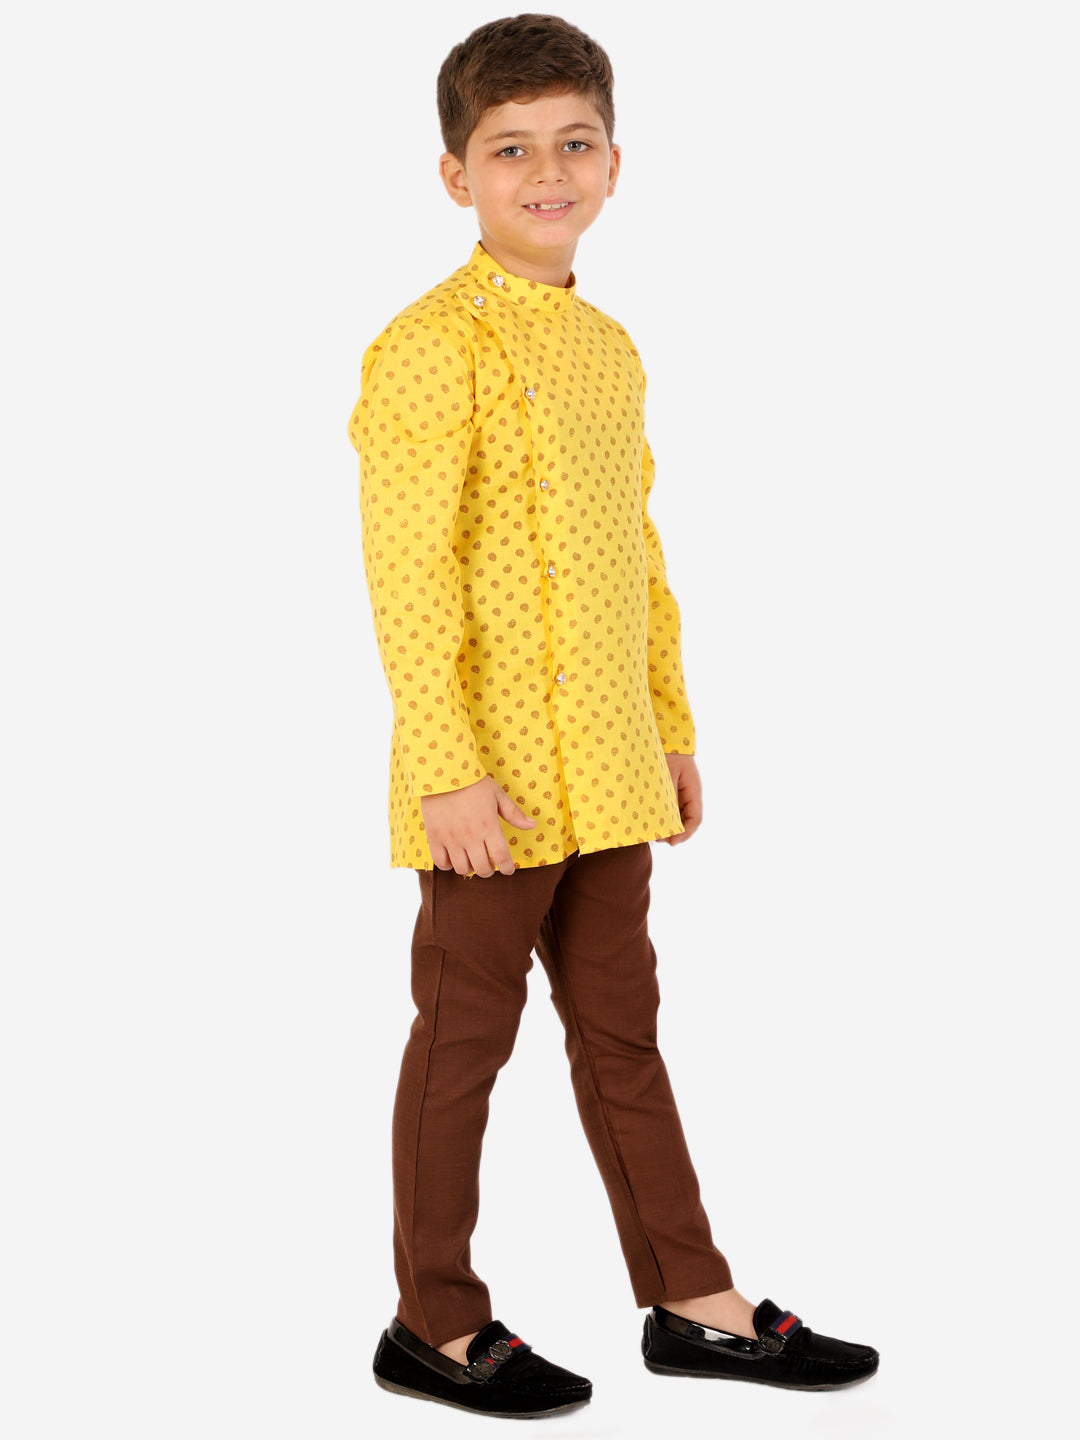 Boys Cotton Printed Kurta Pyjama Set (Yellow)